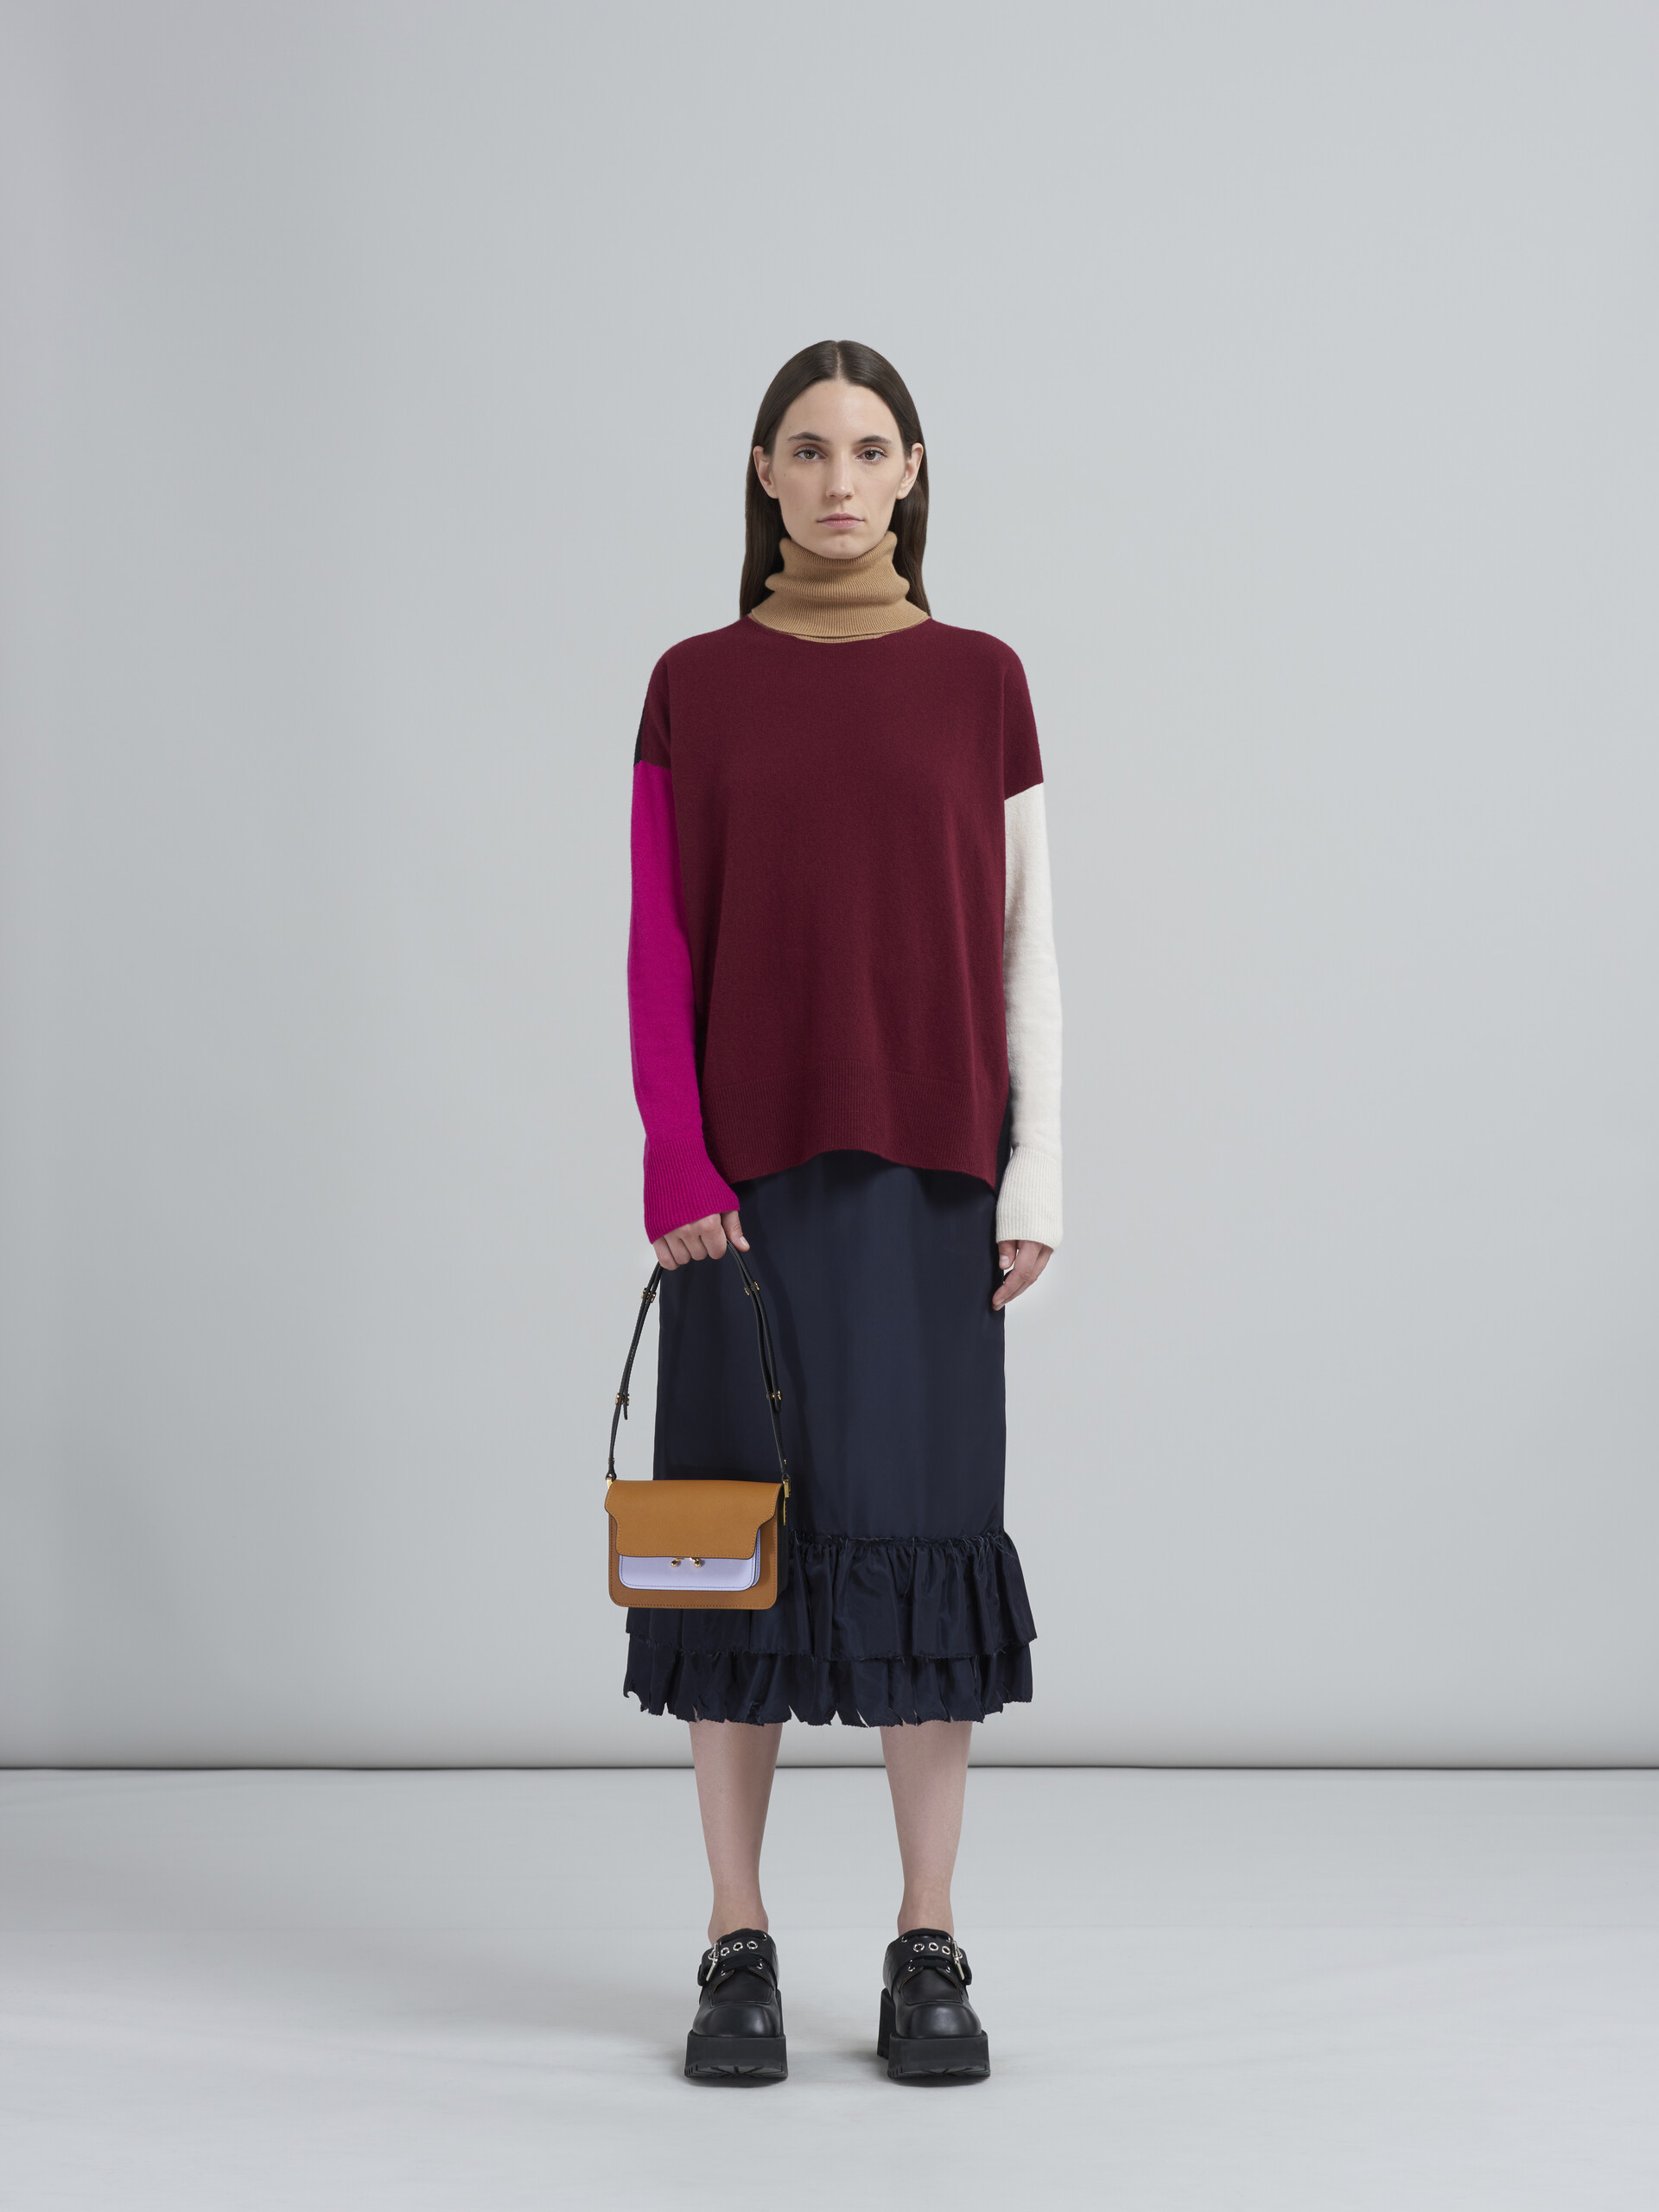 Mini sac TRUNK en cuir saffiano marron, lilas et noir - Sacs portés épaule - Image 2